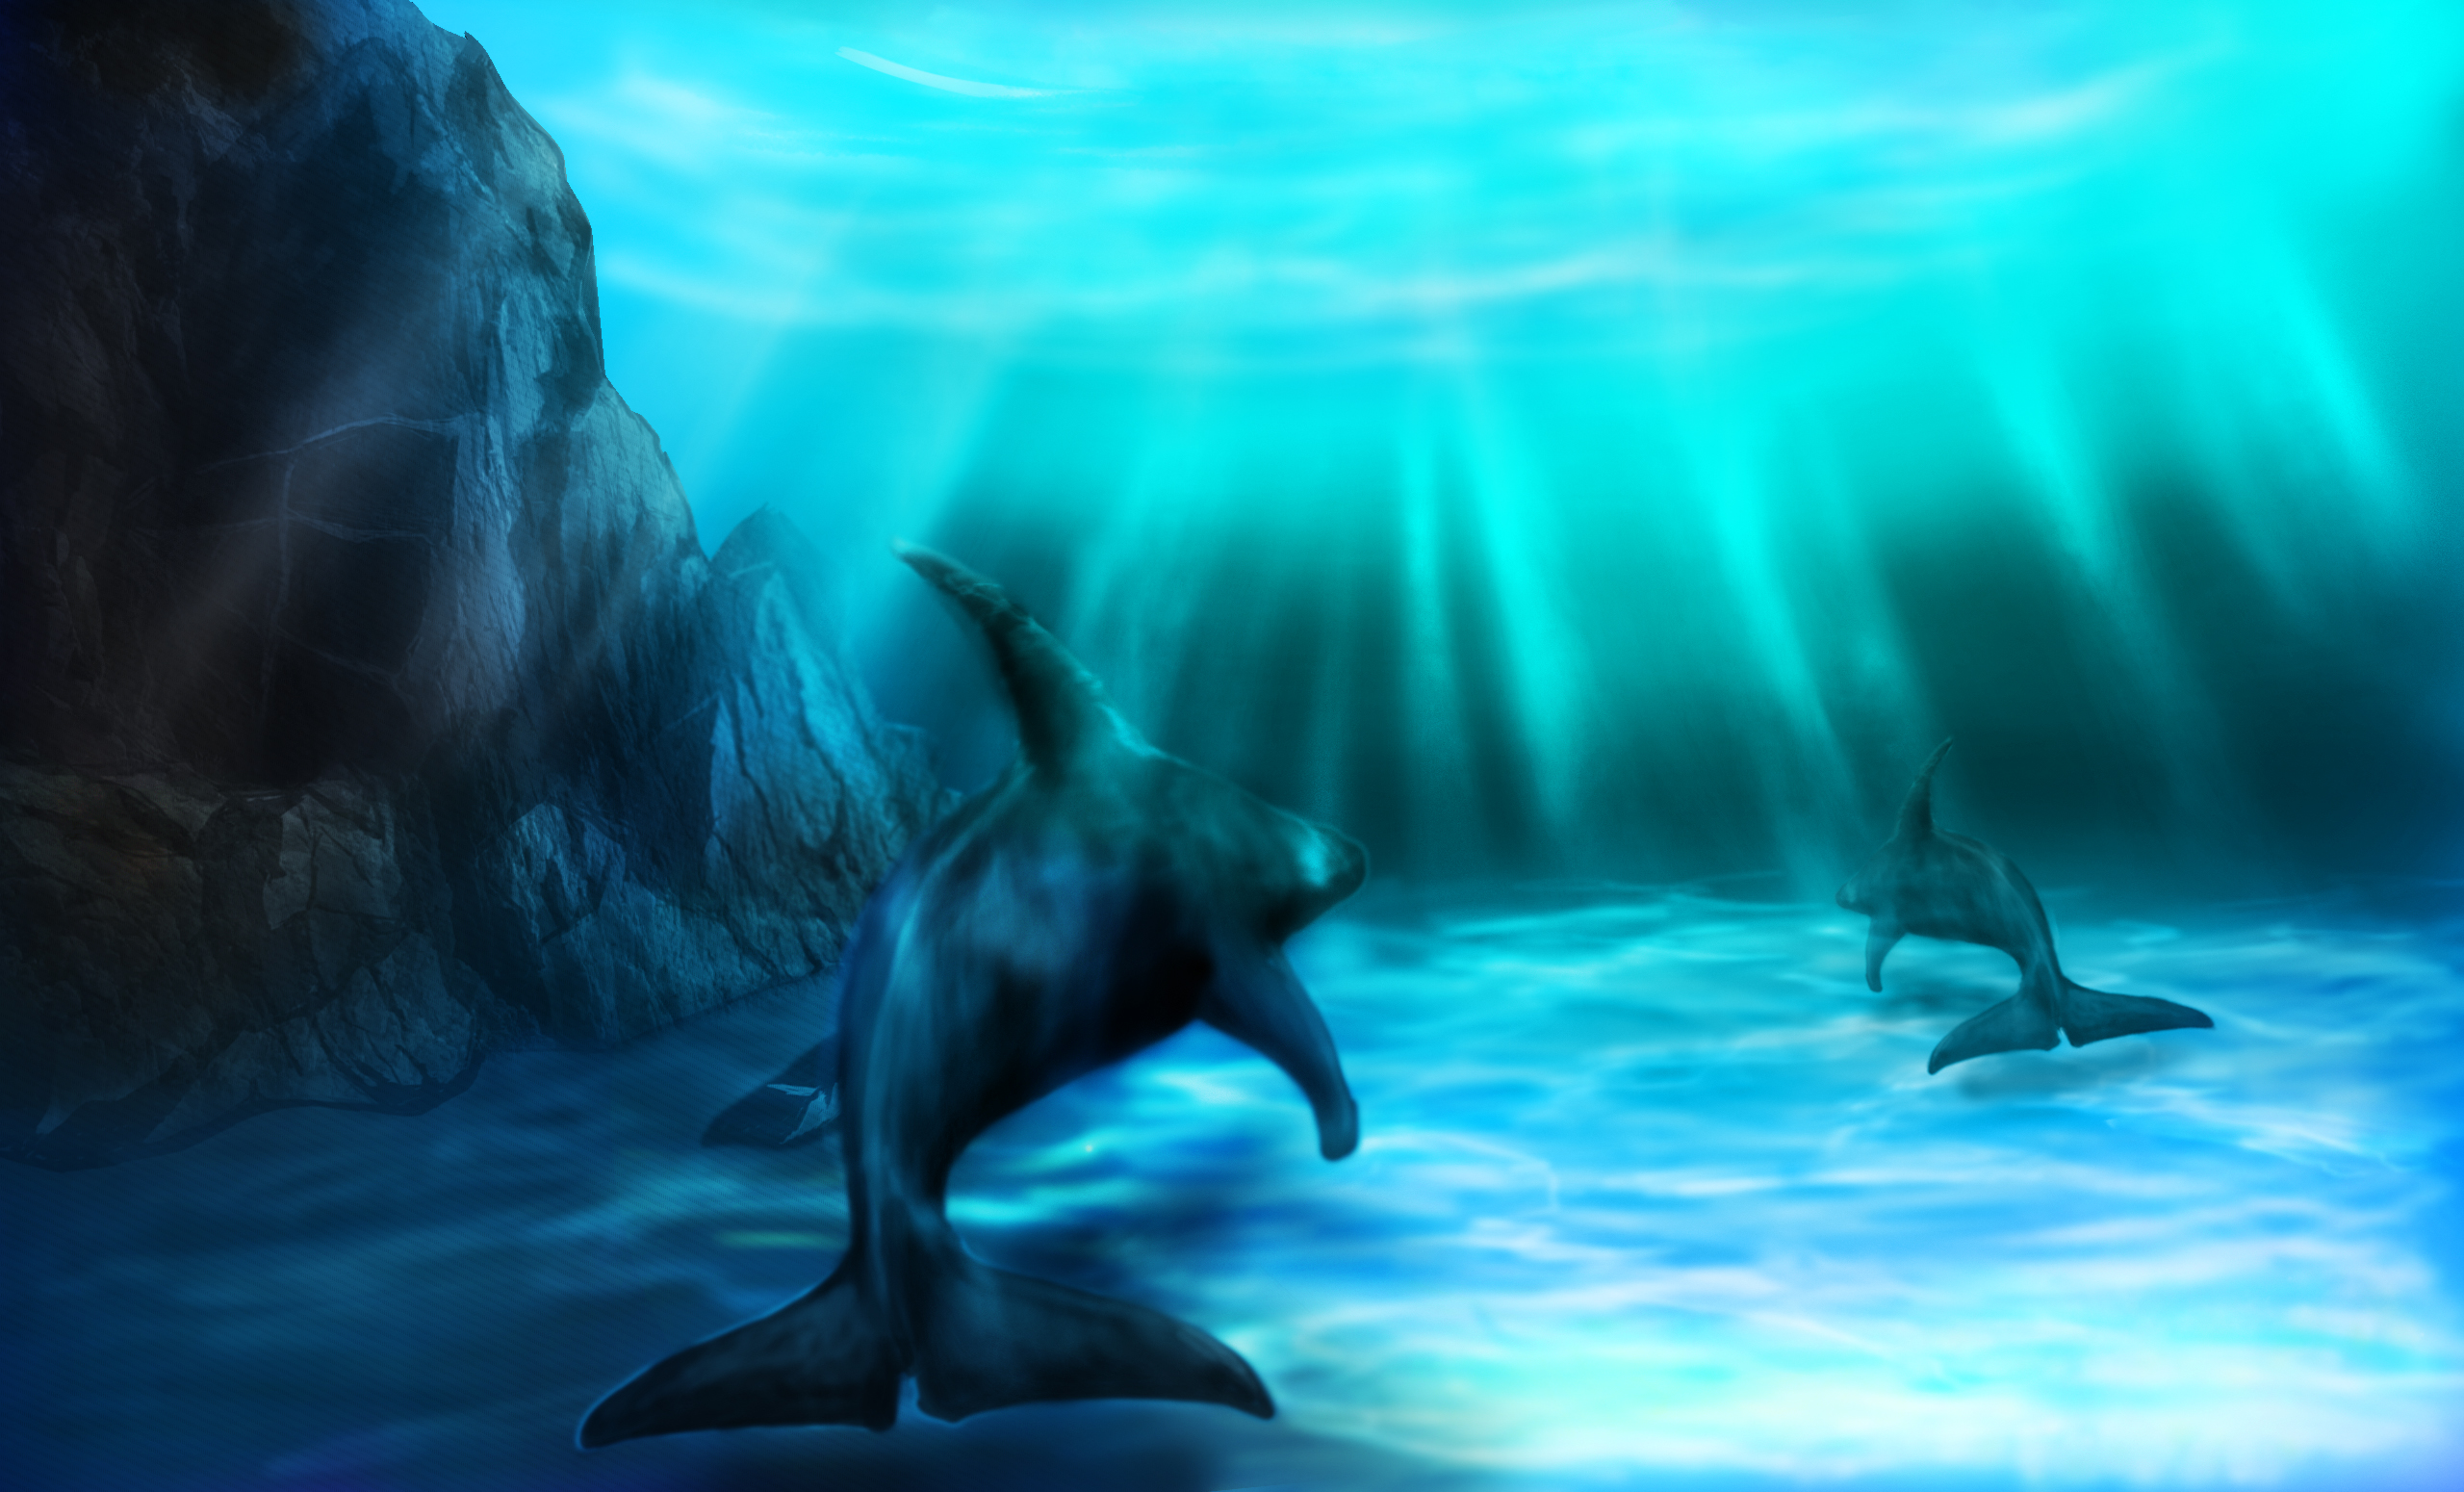 Descarga gratuita de fondo de pantalla para móvil de Animales, Submarina, Delfin.